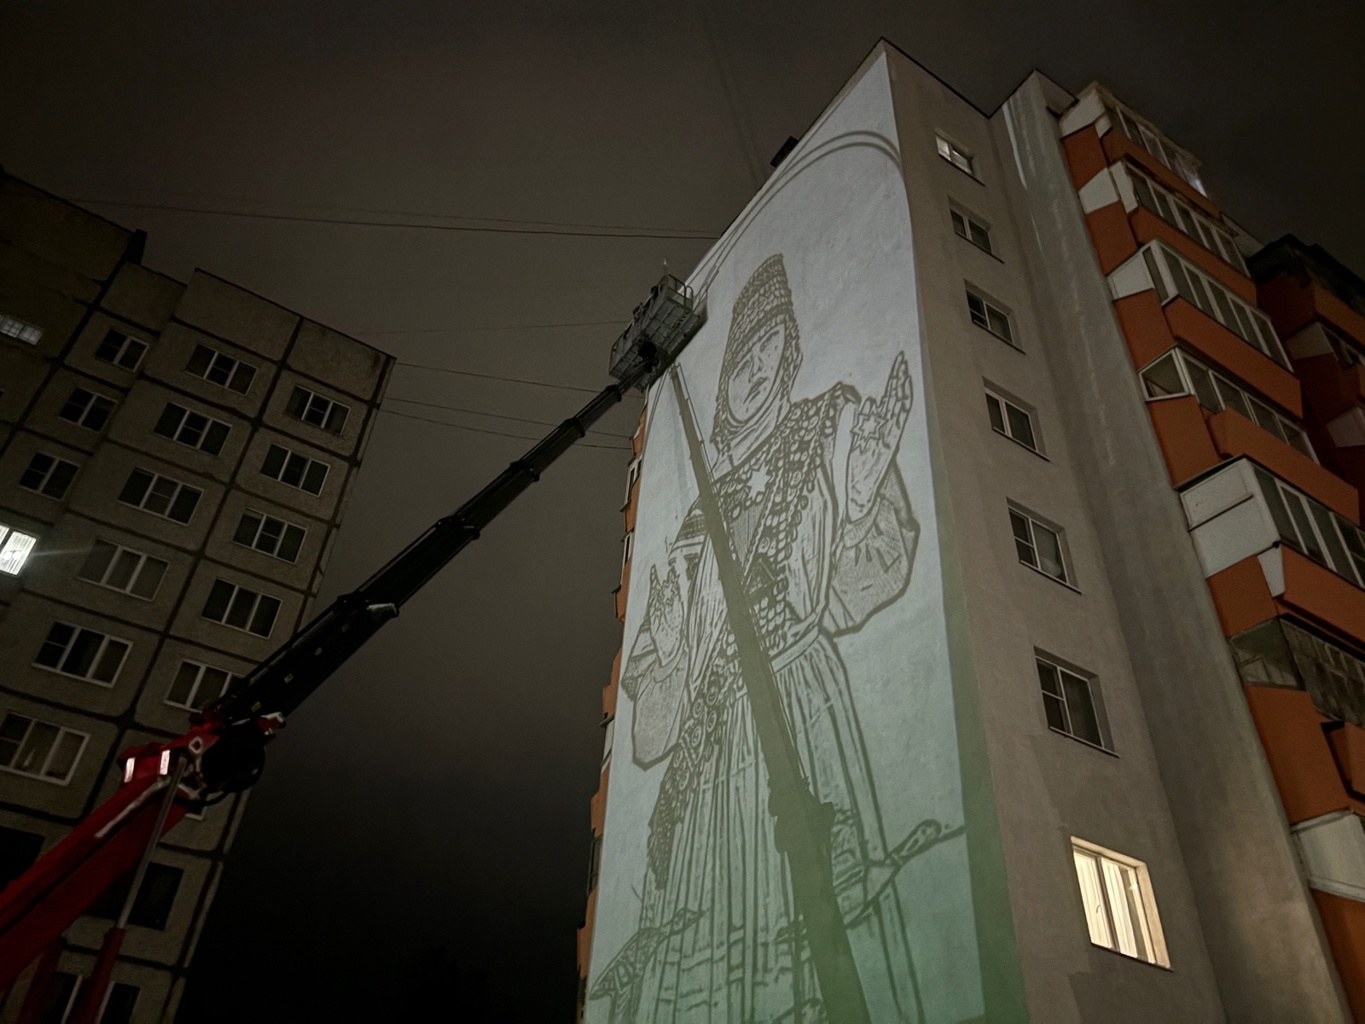 В Чебоксарах дом украсит огромное граффити девушки в чувашском наряде